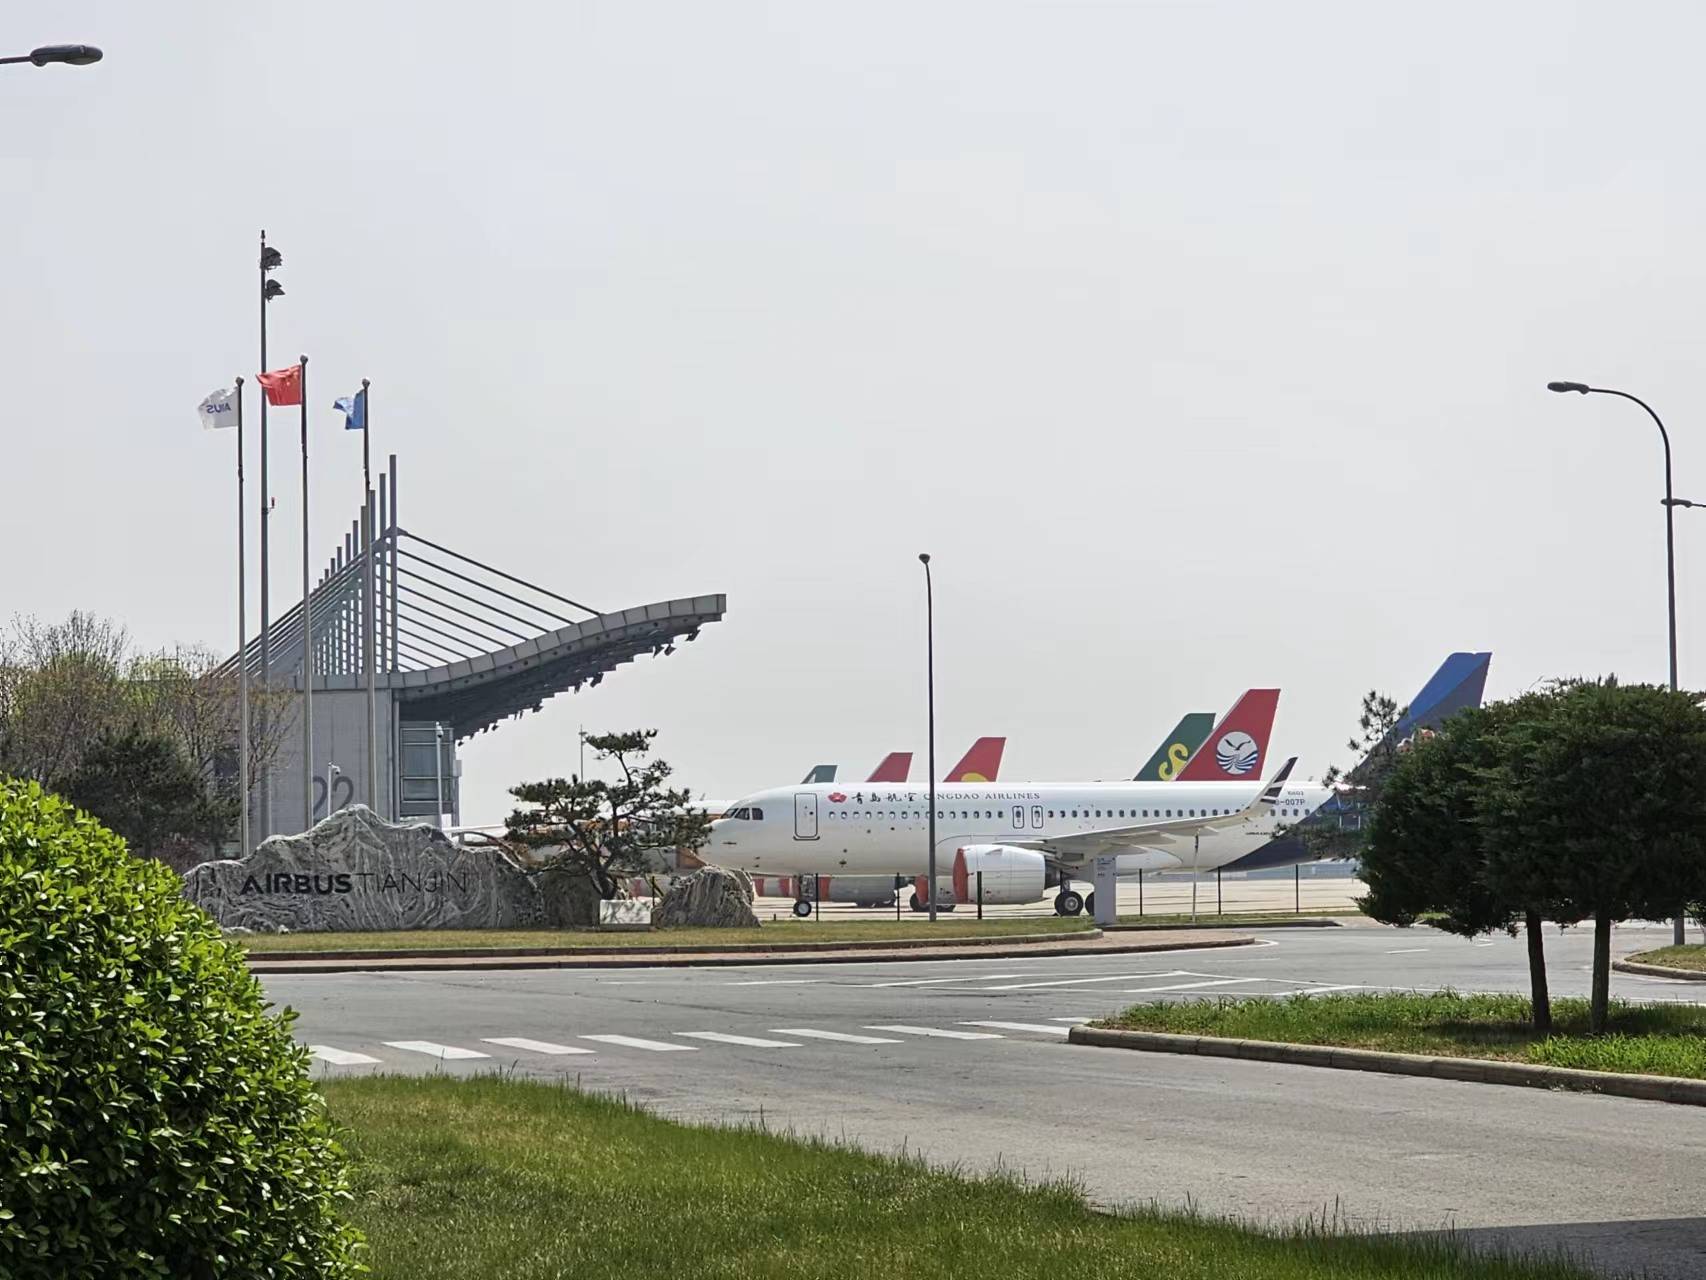 天津机场照片真实图片,天津滨海机场图片(3) - 伤感说说吧